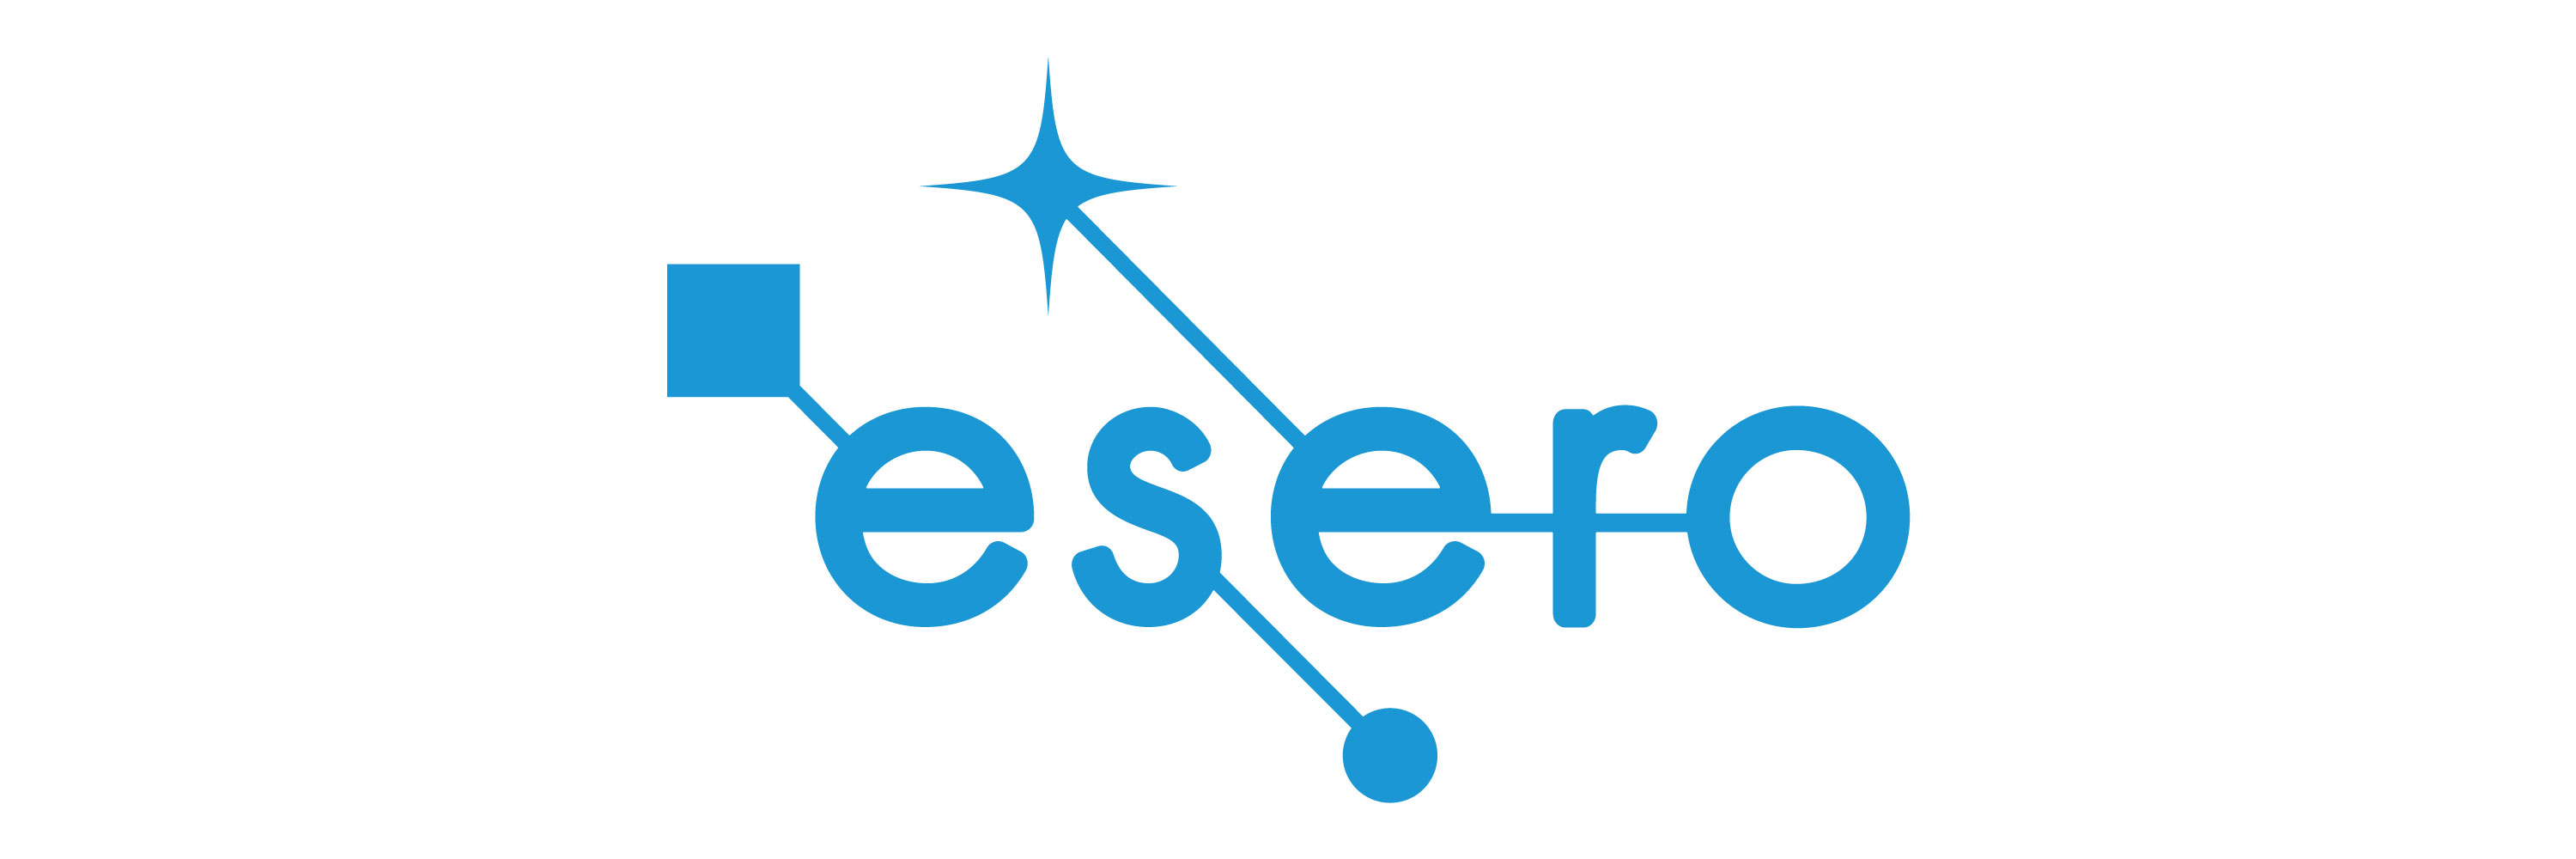 ESERO_logo